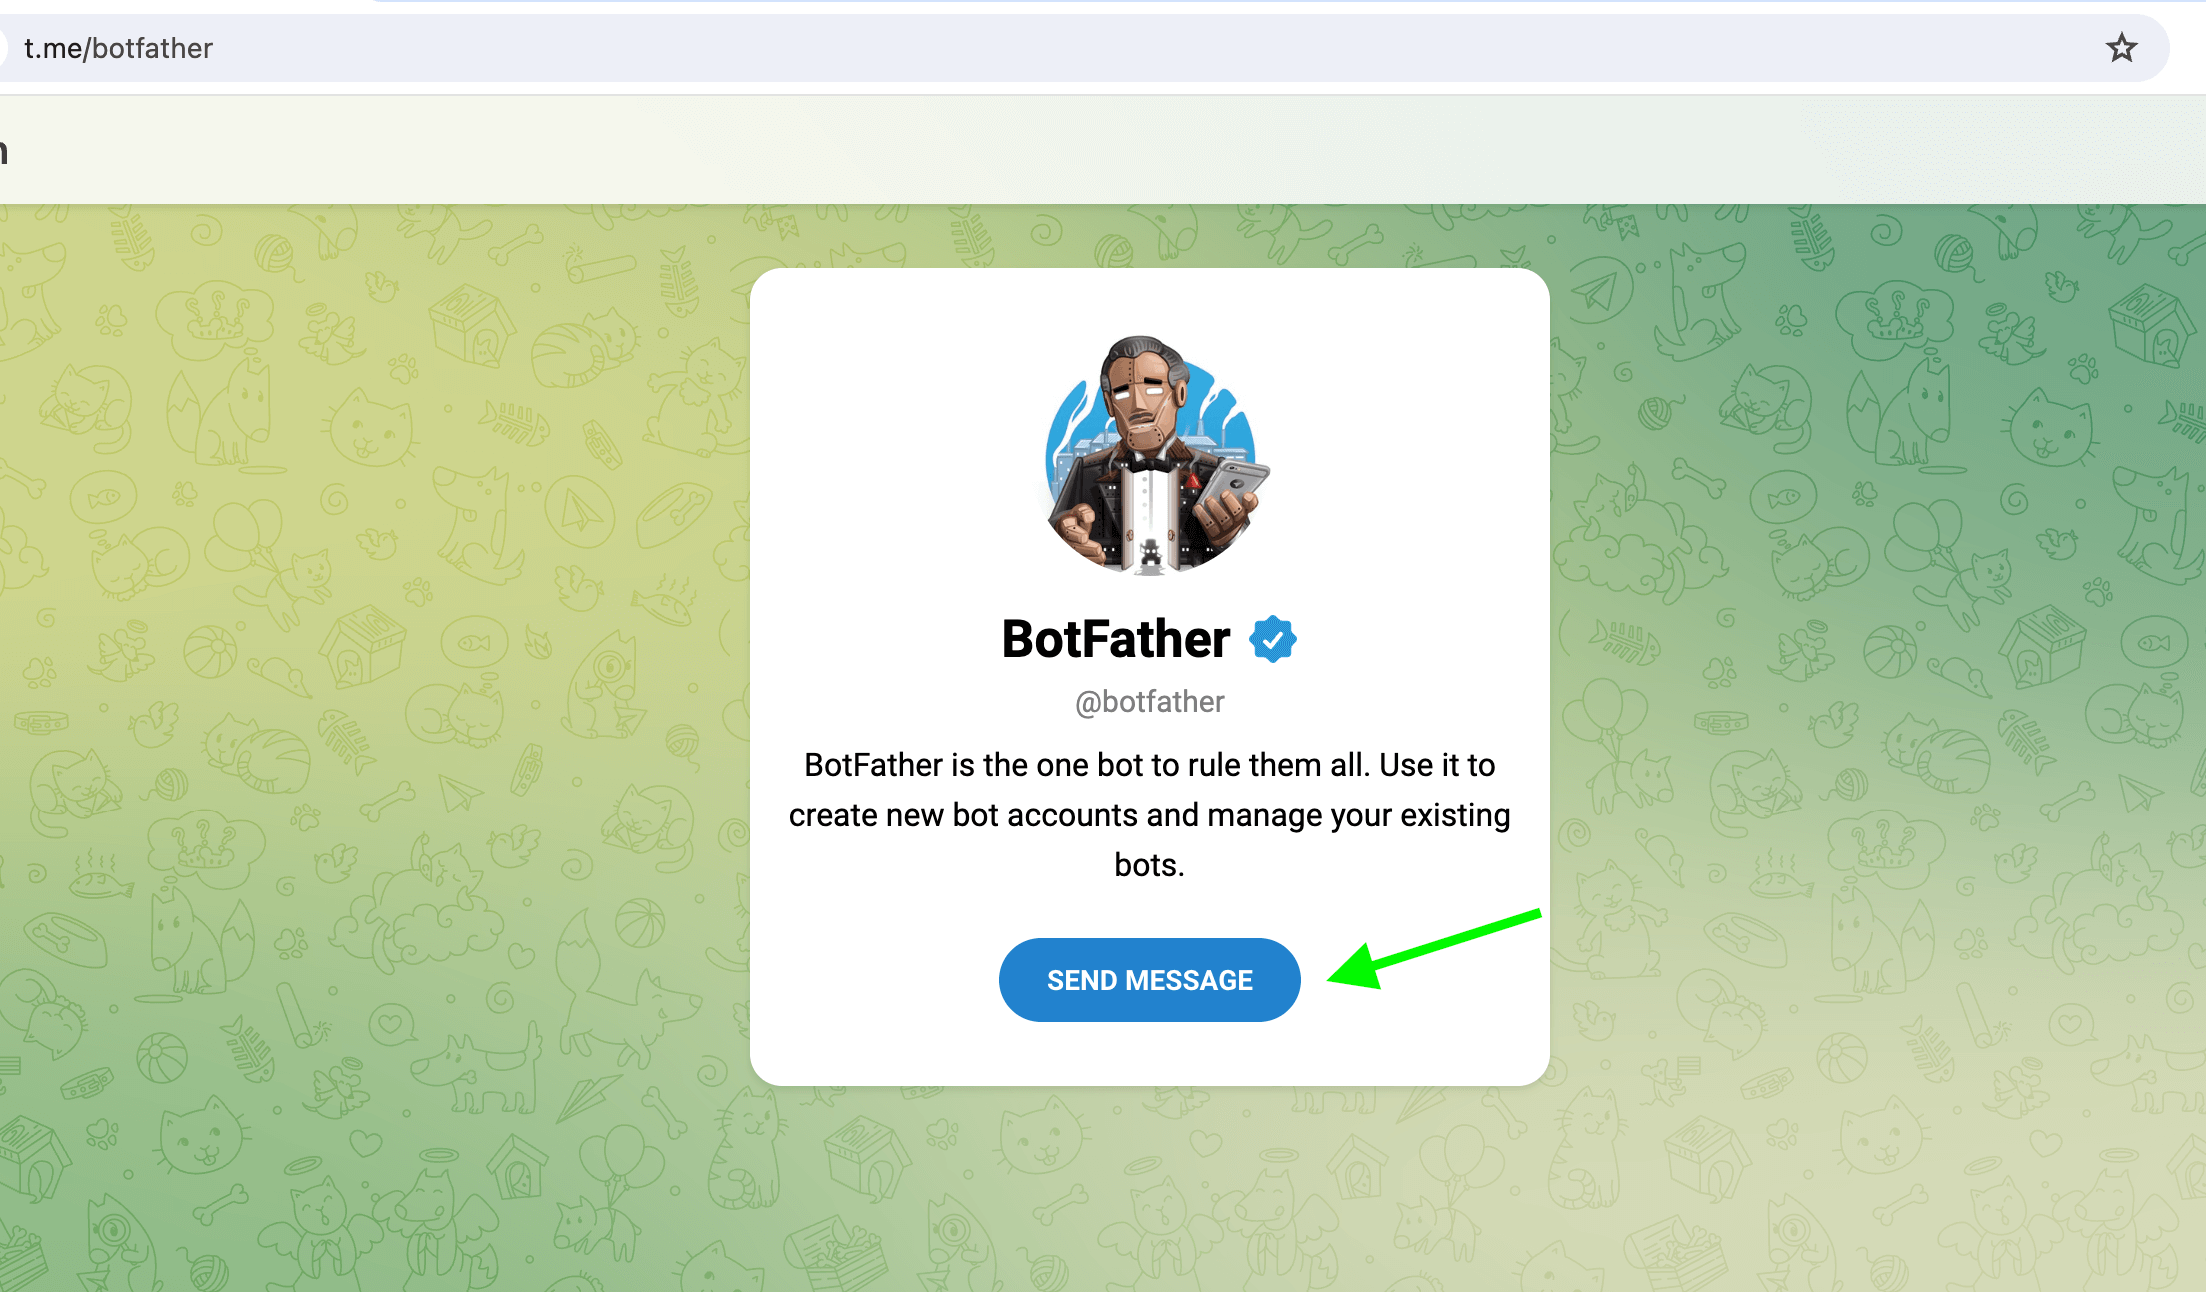 Clique em Send message para abrir o BotFather no Telegram em seu desktop.